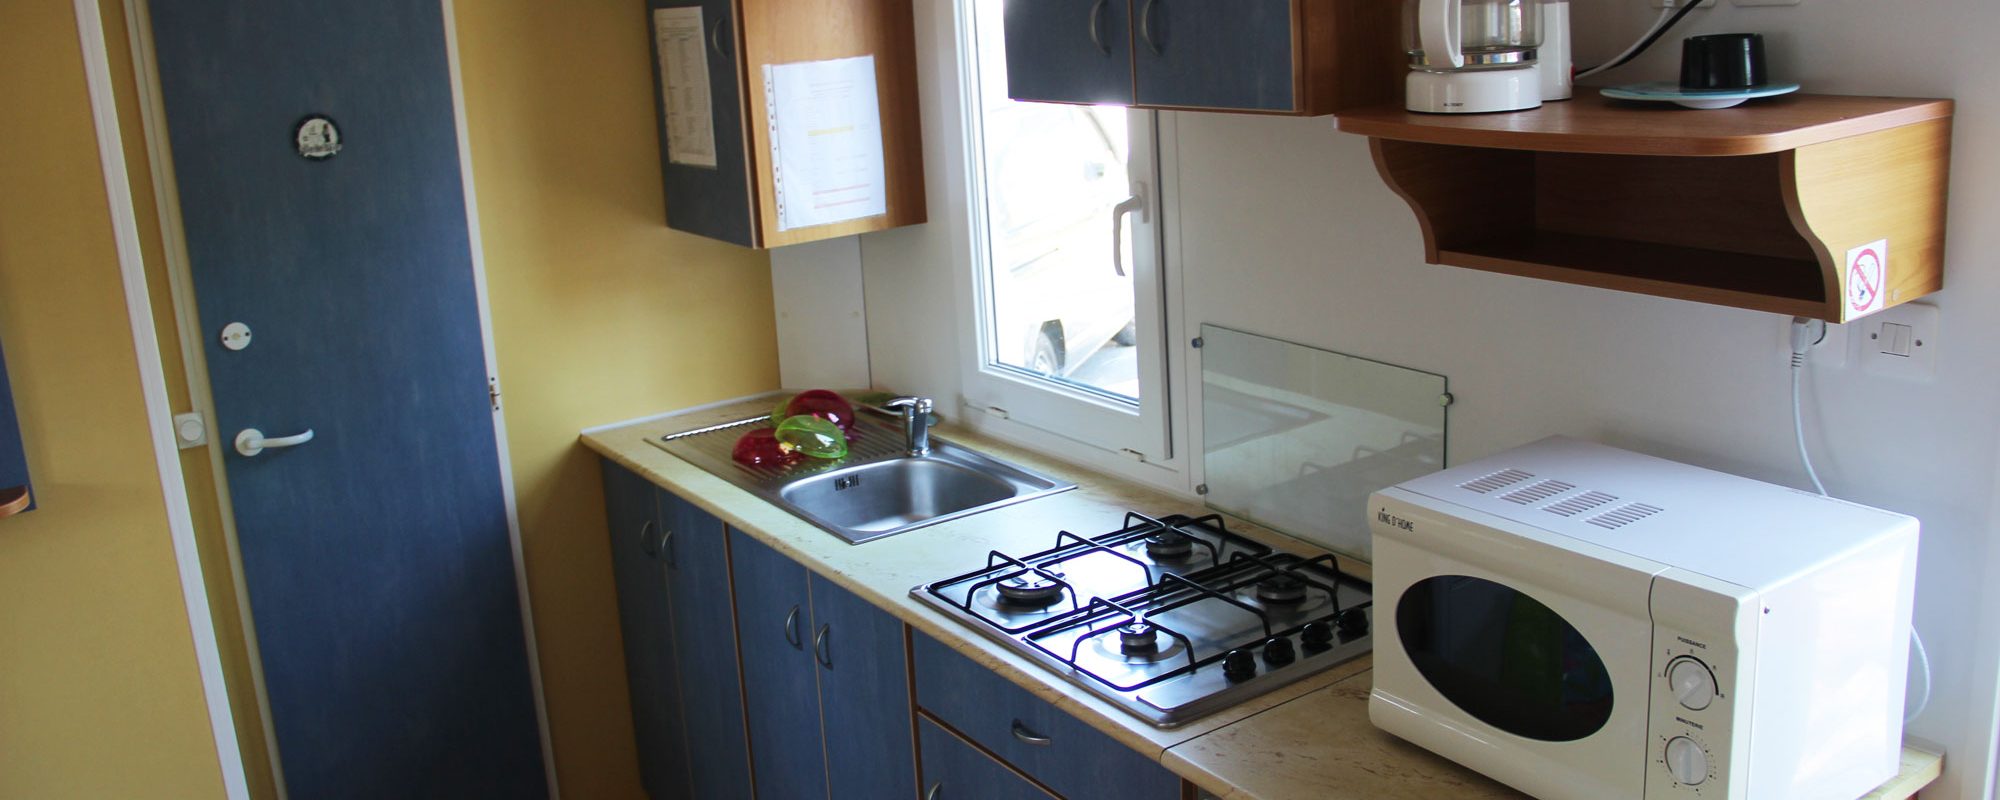 Location de mobil-home Baliste 3 chambres à Guérande : cuisine